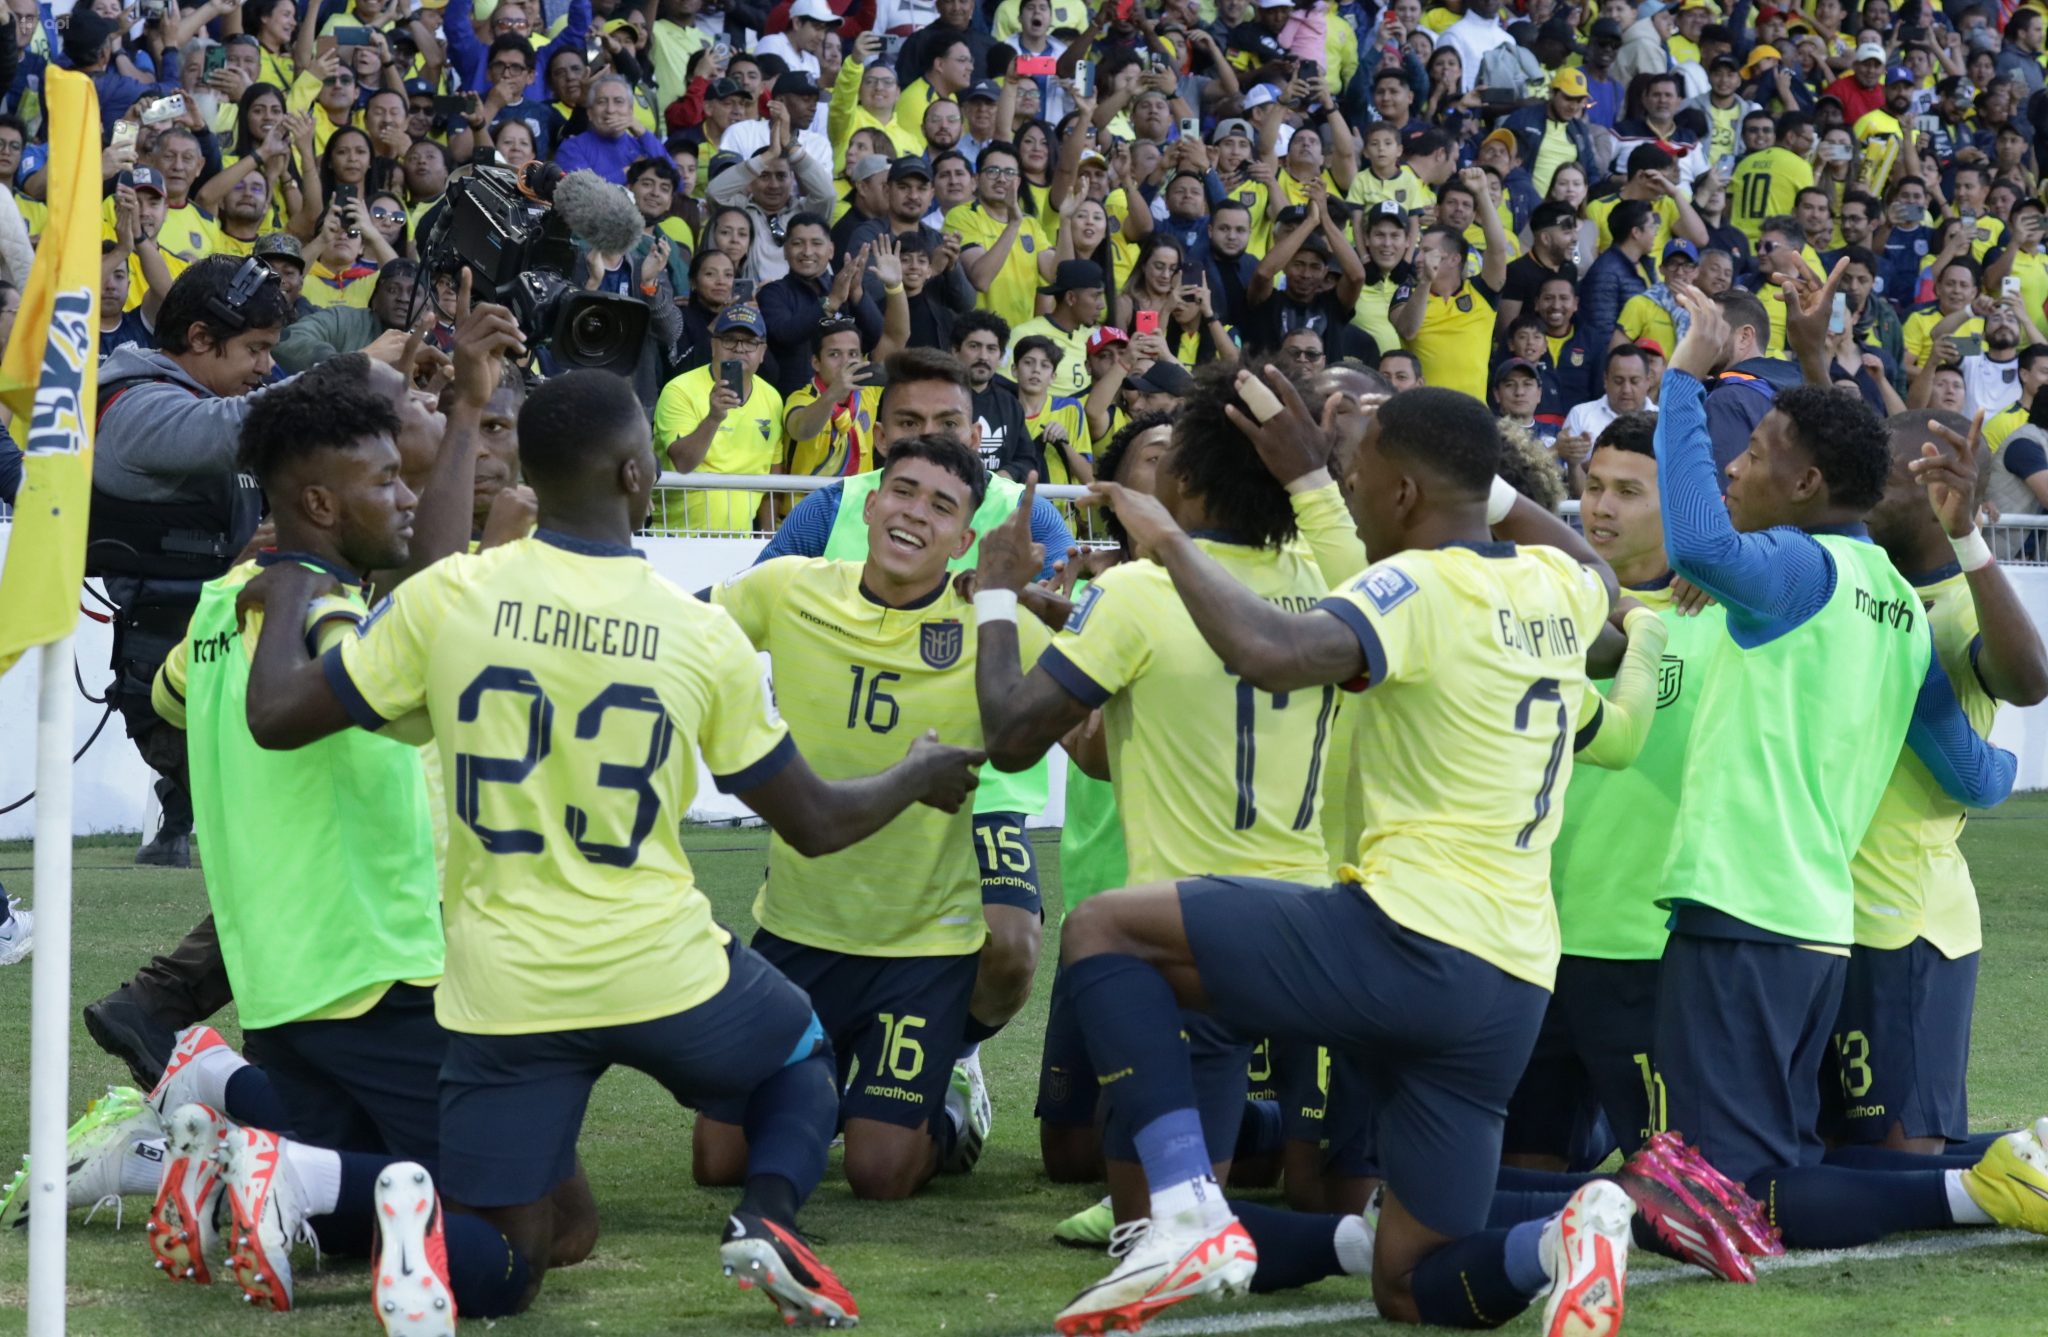 Ecuador cerrará su año futbolístico enfrentado a Chile, en Quito, esto por las eliminatorias mundialistas a Estados Unidos 2026.